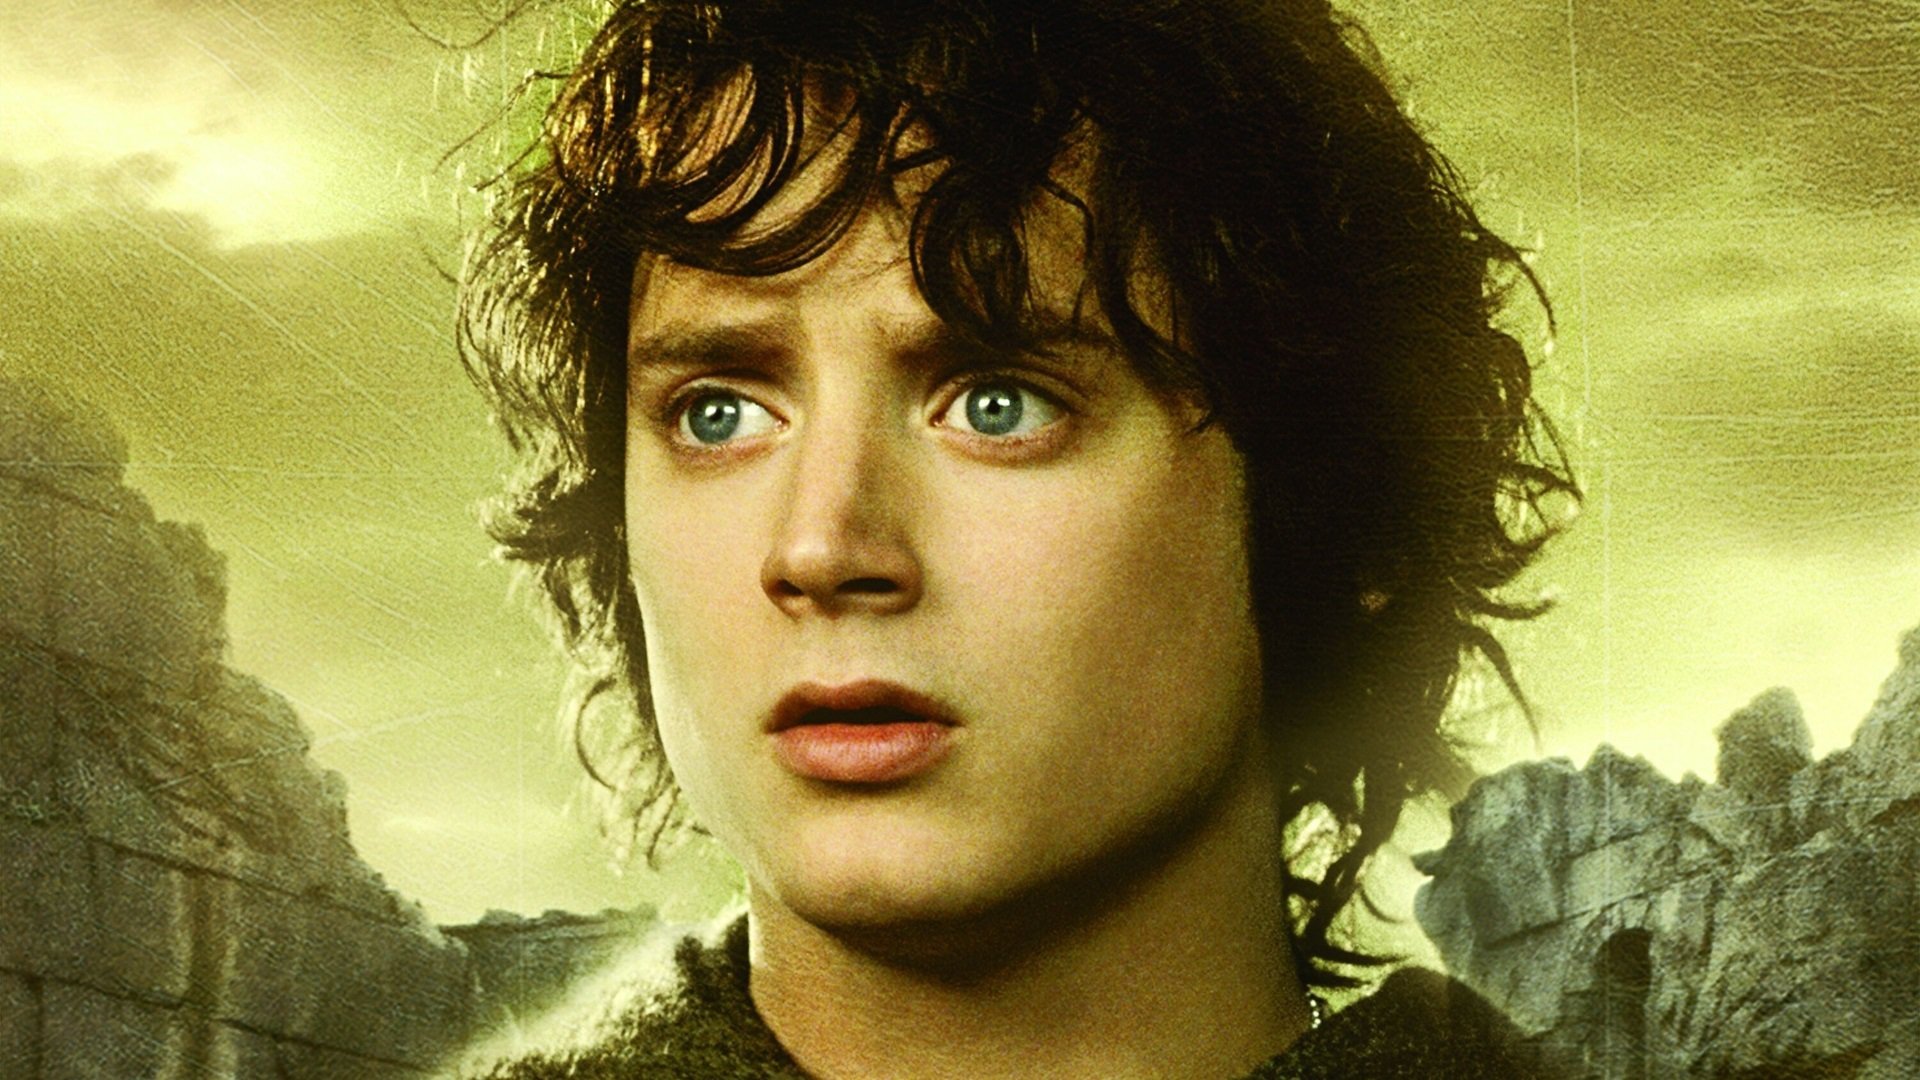 Властелин колец снят в. Хоббит Фродо. Властелин колец Фродо. Фродо Бэггинс Властелин колец. Властелин колец братство кольца Фродо.